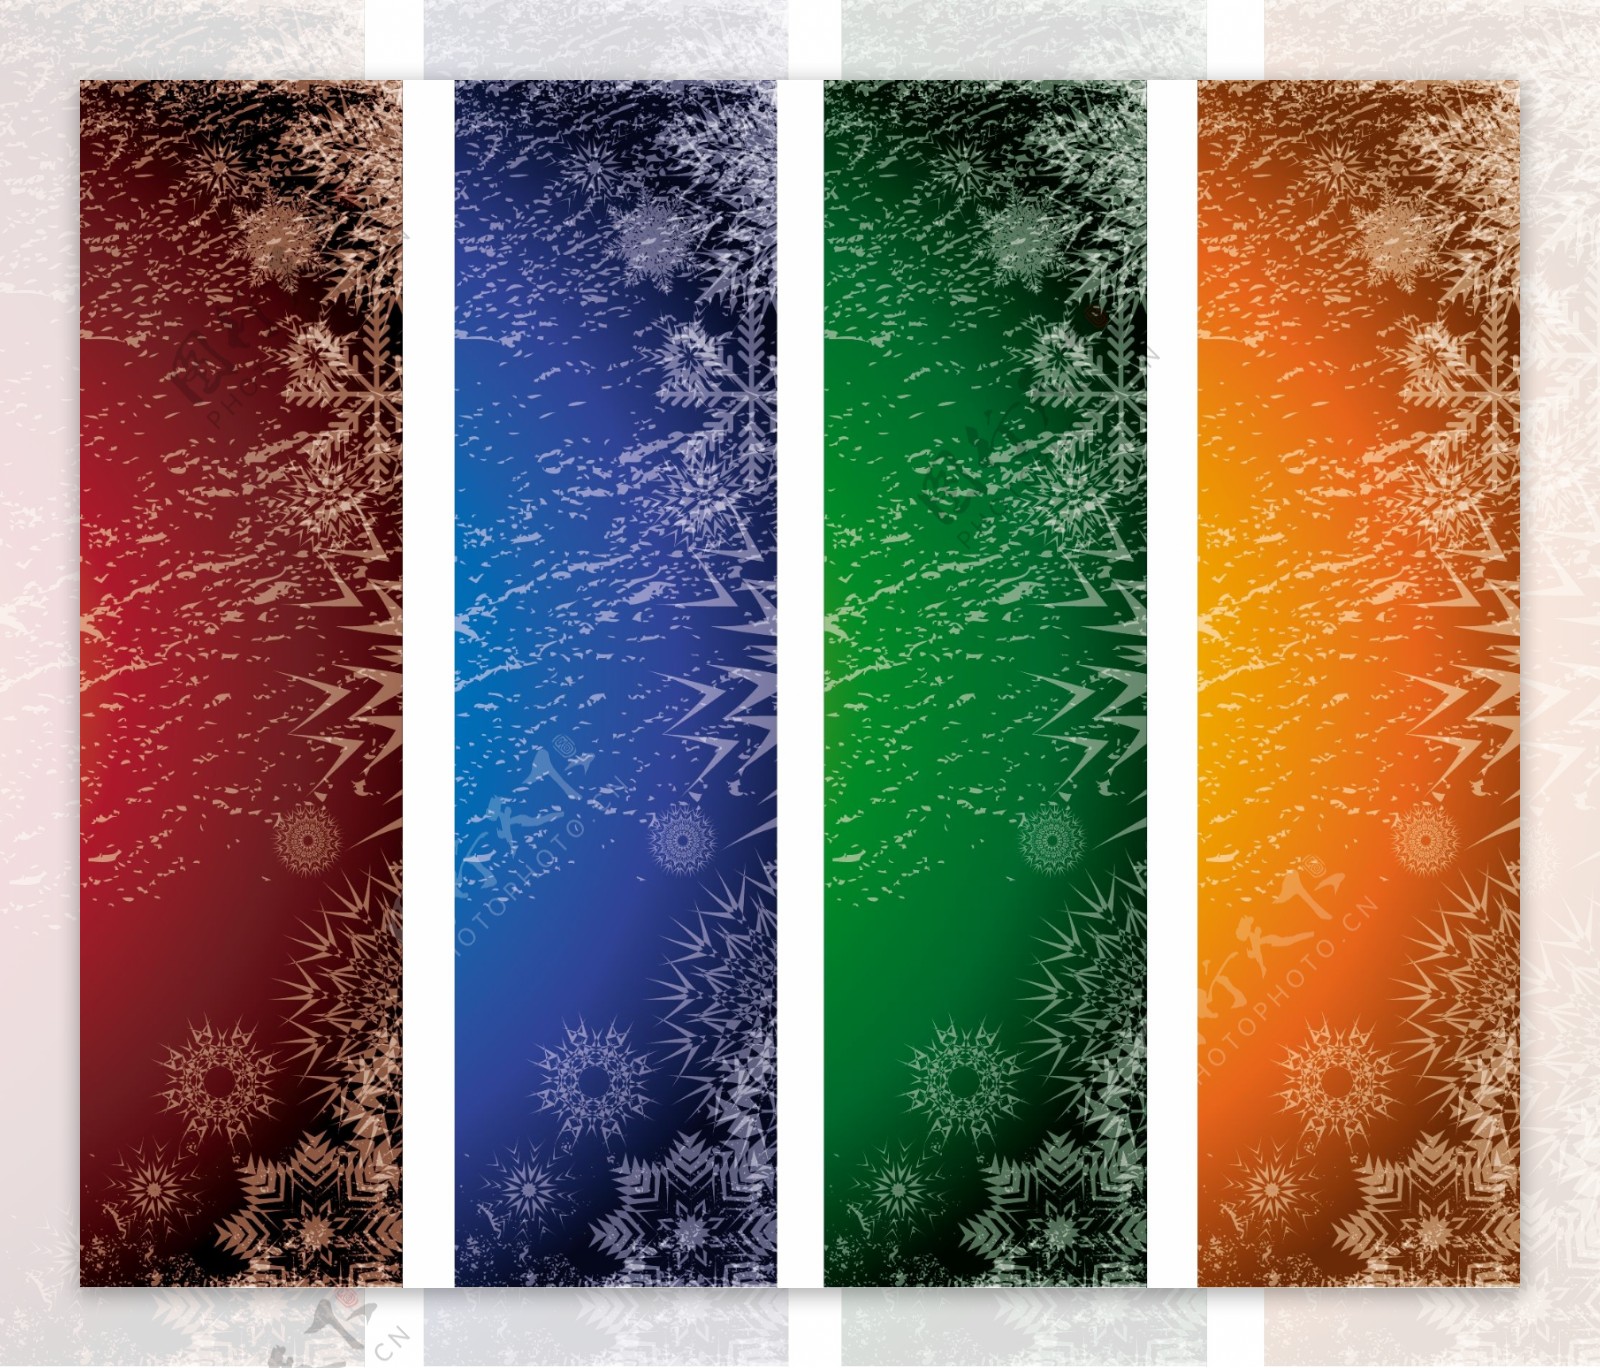 4丰富多彩的冬季抽象向量横幅集